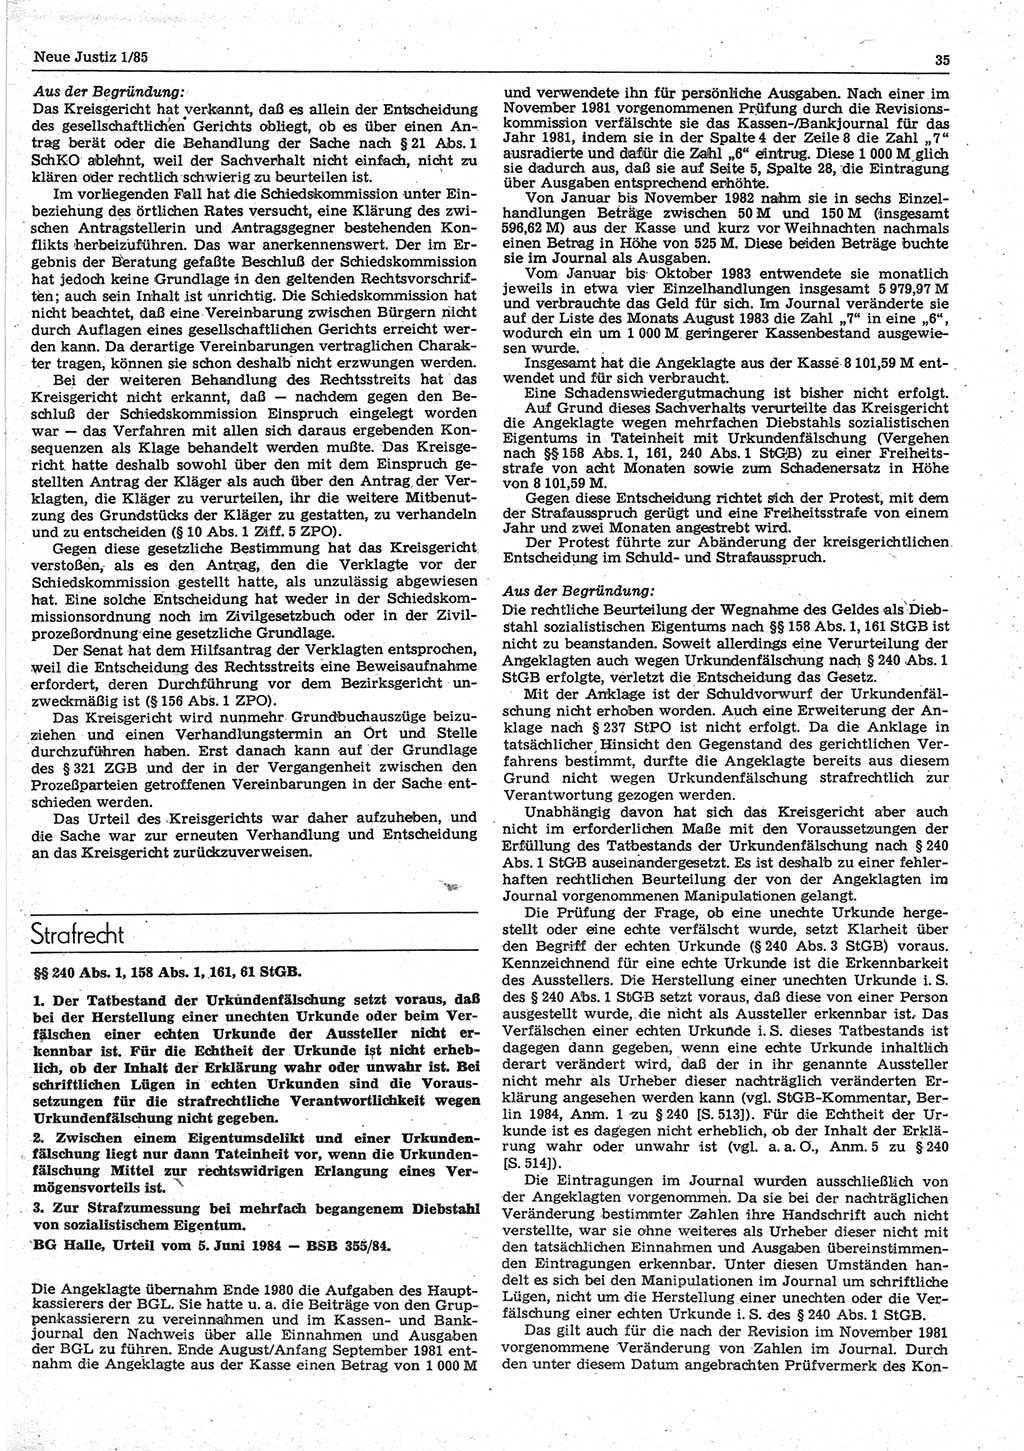 Neue Justiz (NJ), Zeitschrift für sozialistisches Recht und Gesetzlichkeit [Deutsche Demokratische Republik (DDR)], 39. Jahrgang 1985, Seite 35 (NJ DDR 1985, S. 35)